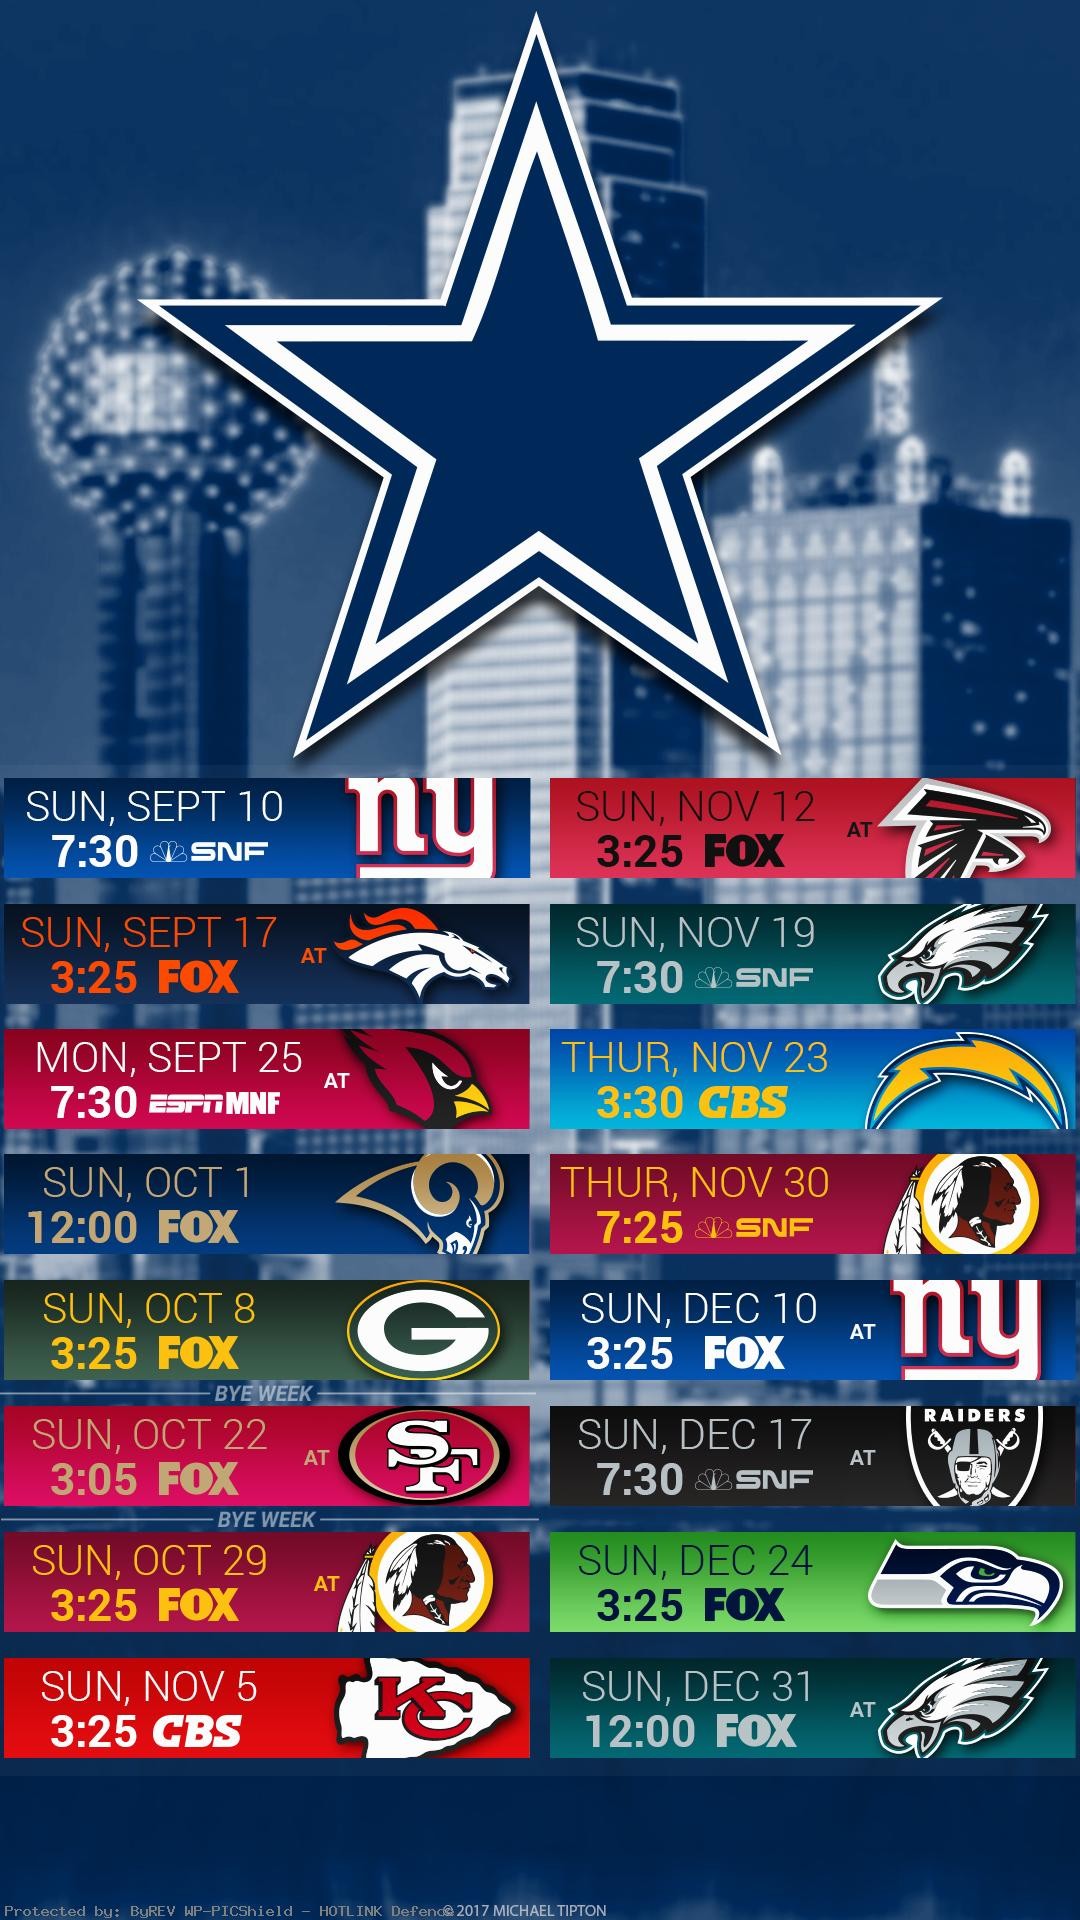 Dallas Cowboys Logo Wallpapers  Top Free Dallas Cowboys Logo Backgrounds   WallpaperAccess